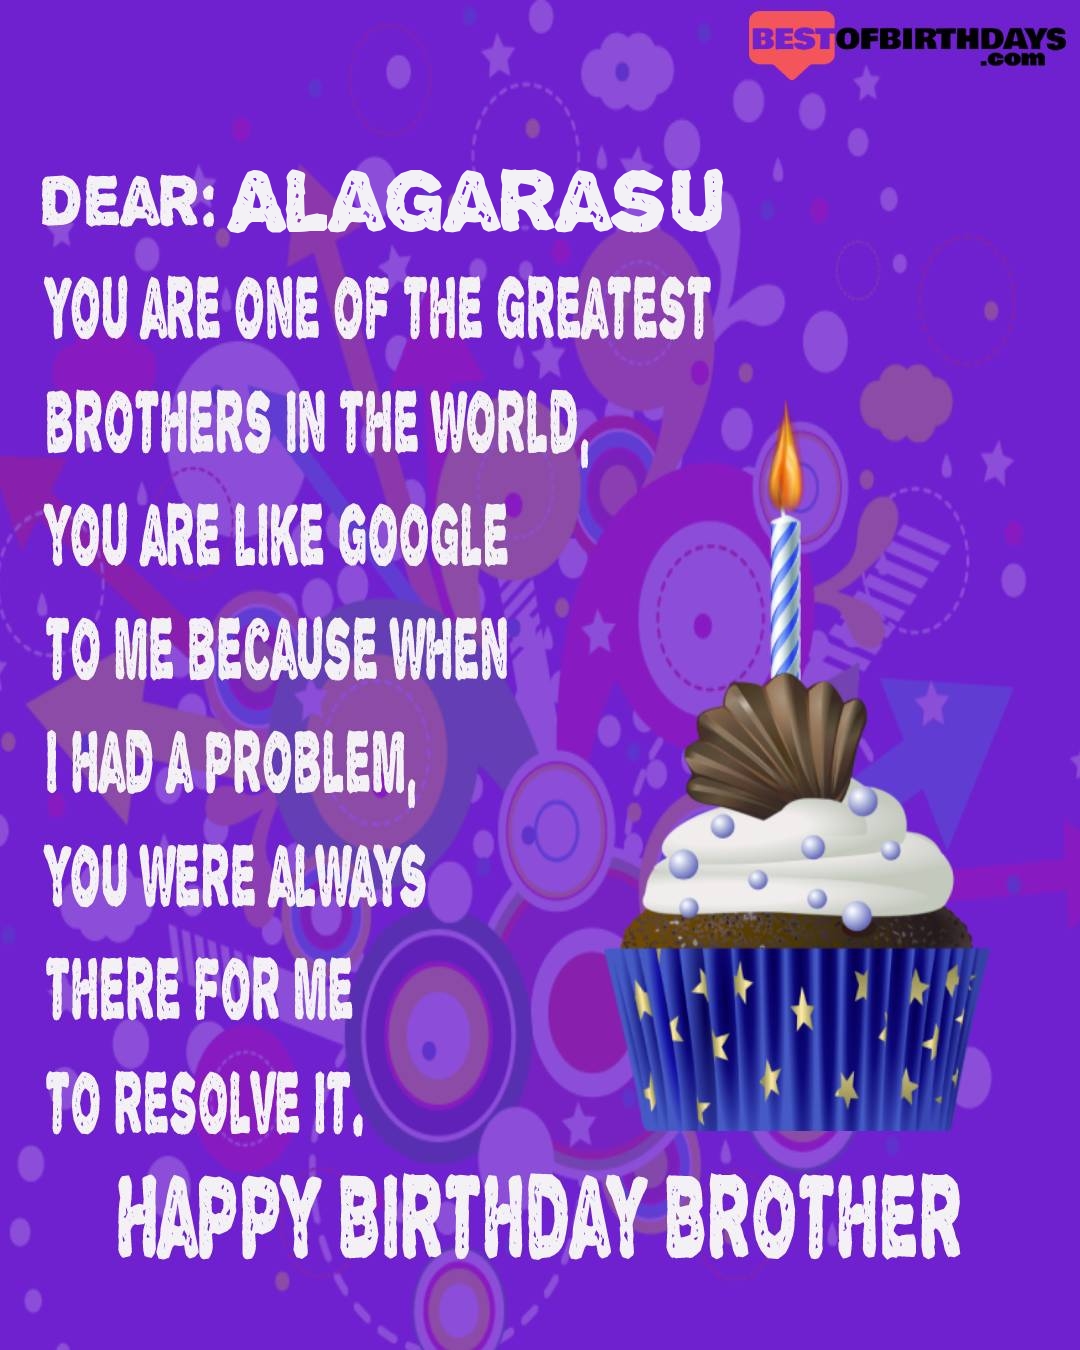 Happy birthday alagarasu bhai brother bro